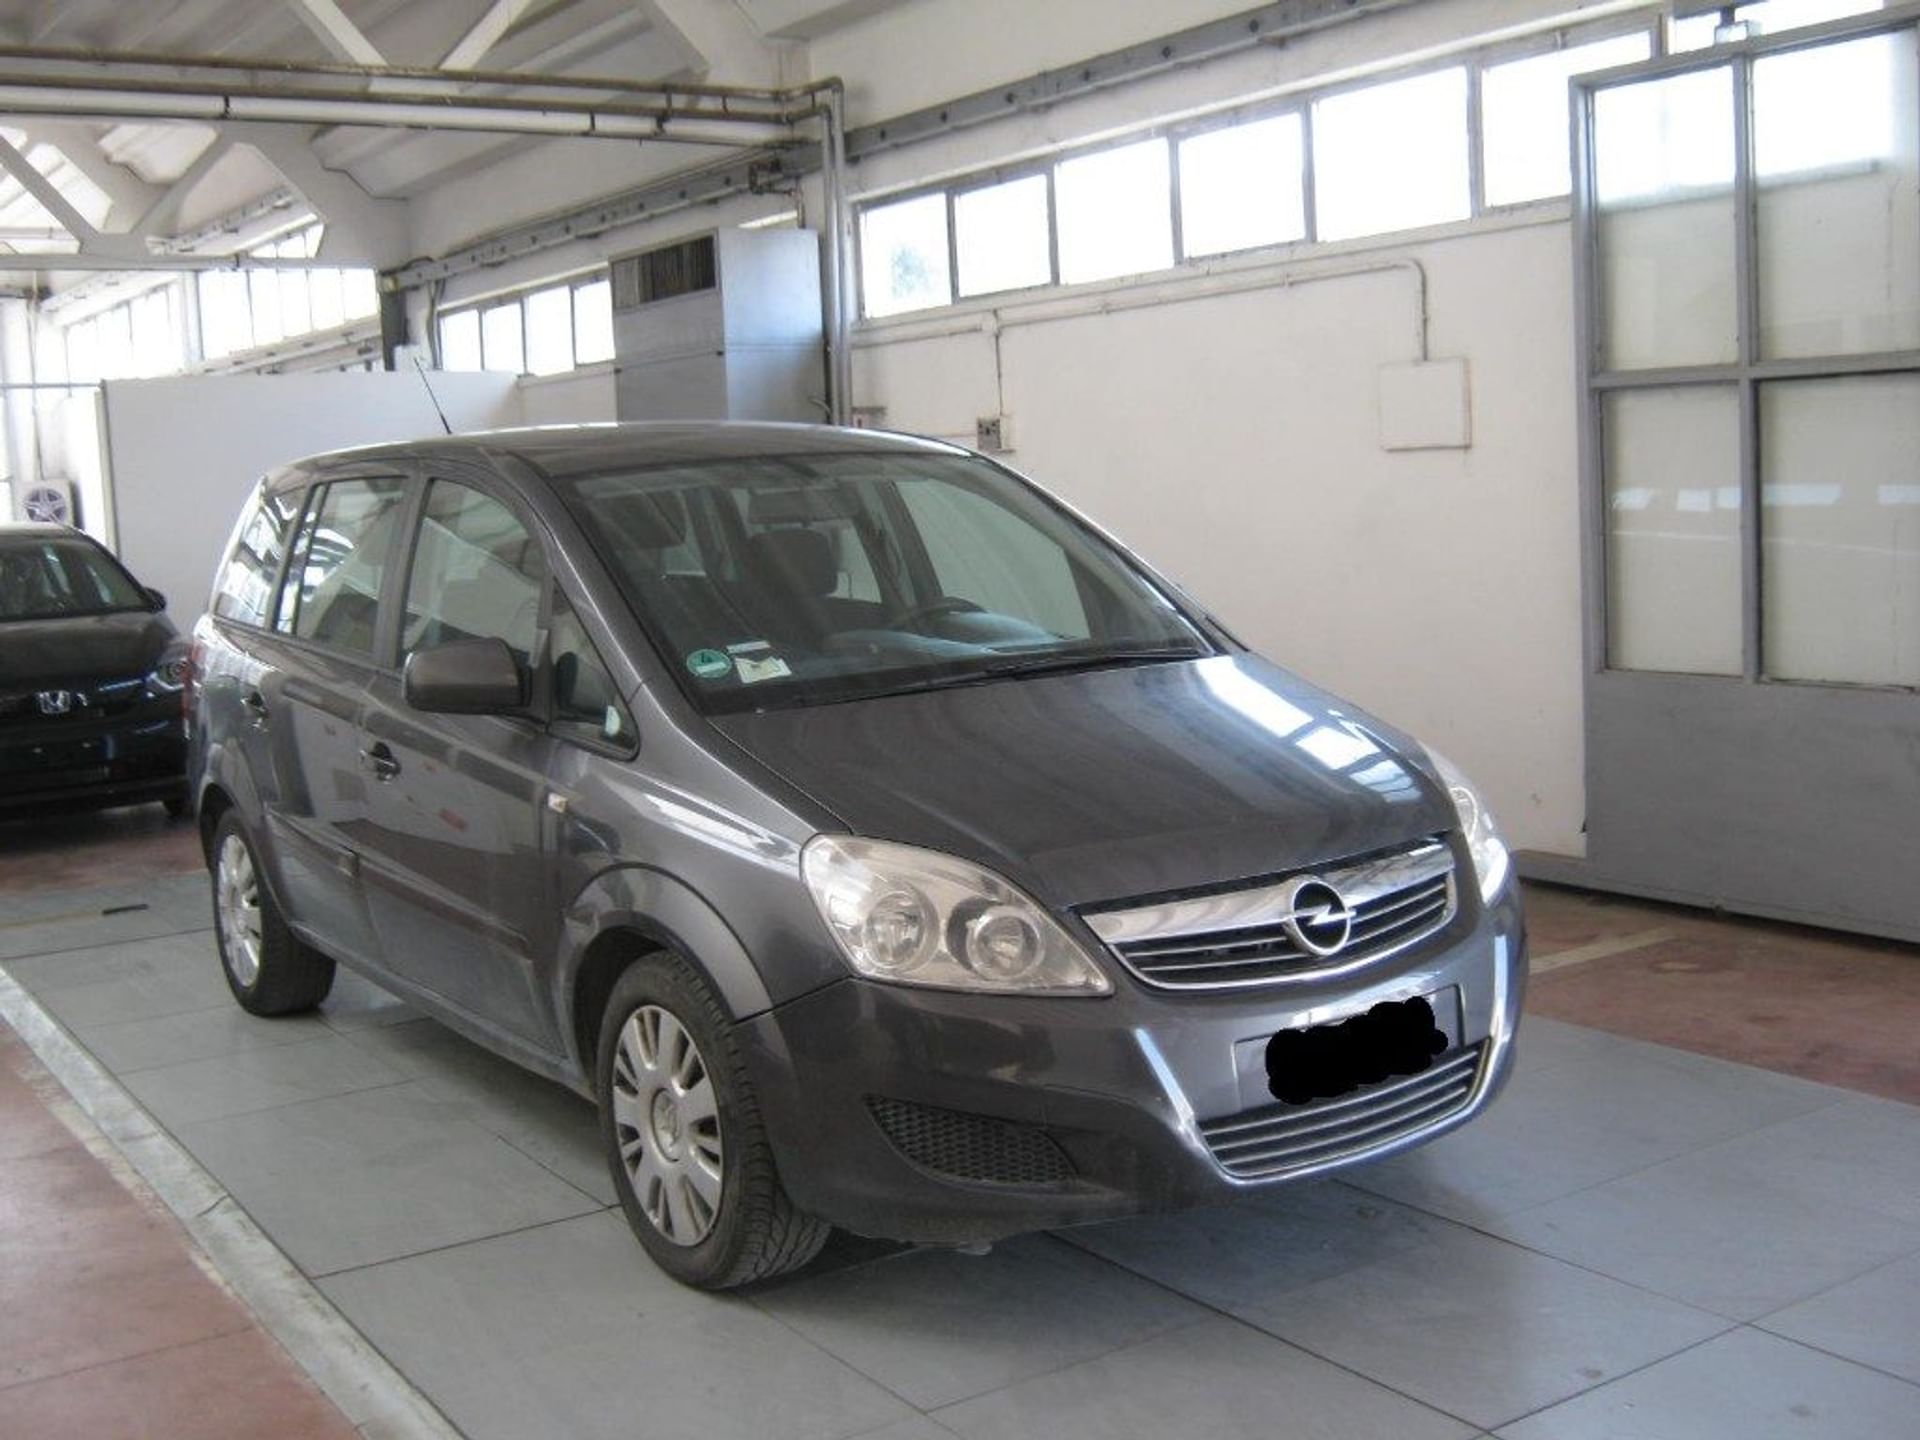 Opel Zafira 1.6 16V ecoM 150CV